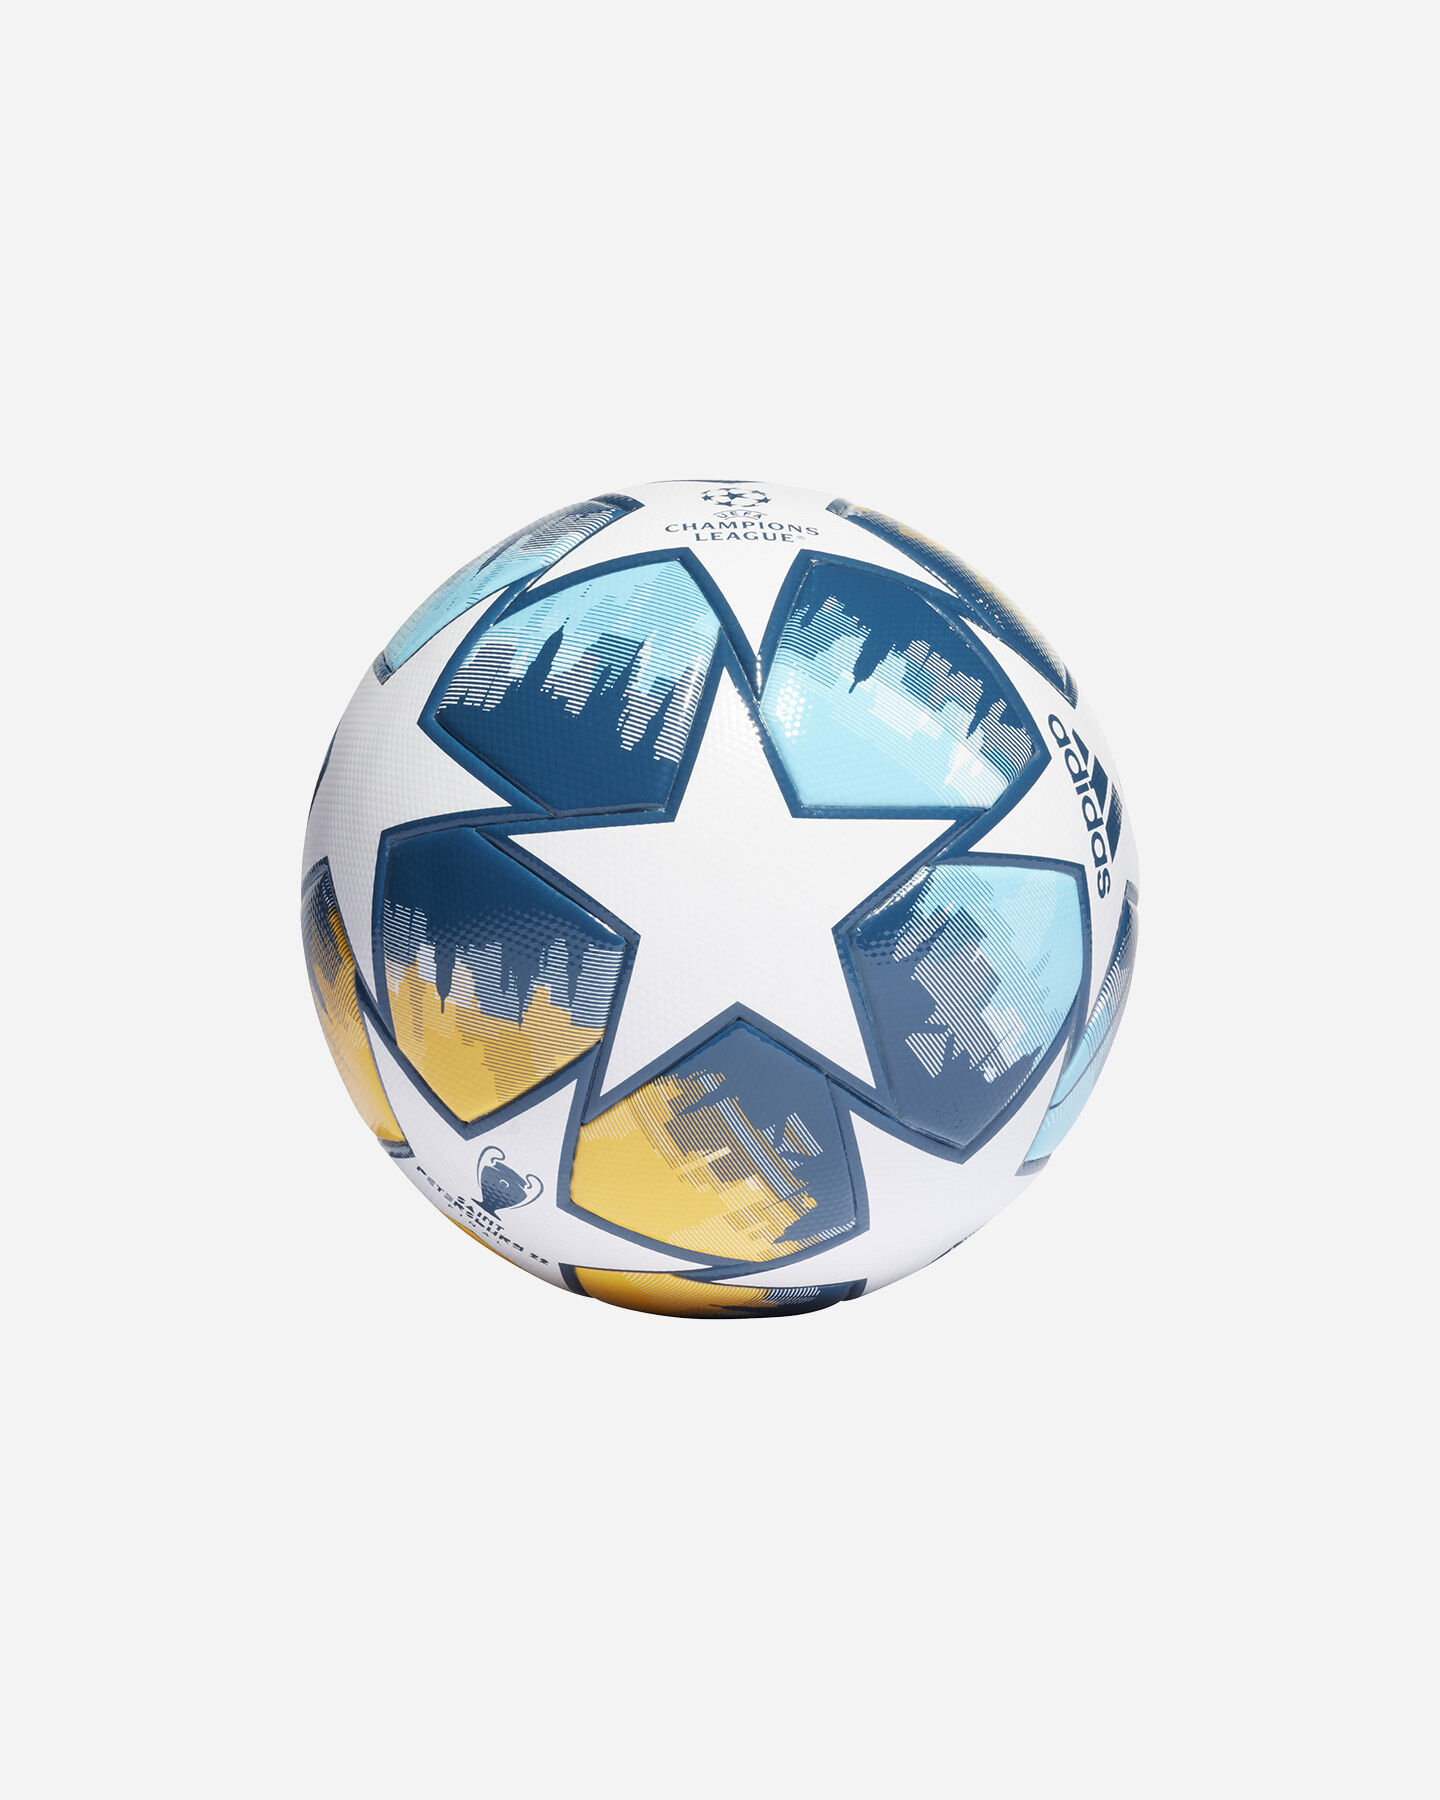  Pallone calcio ADIDAS UEFA LEAGUE SPECIAL EDITION S5377670|UNI|5 scatto 1